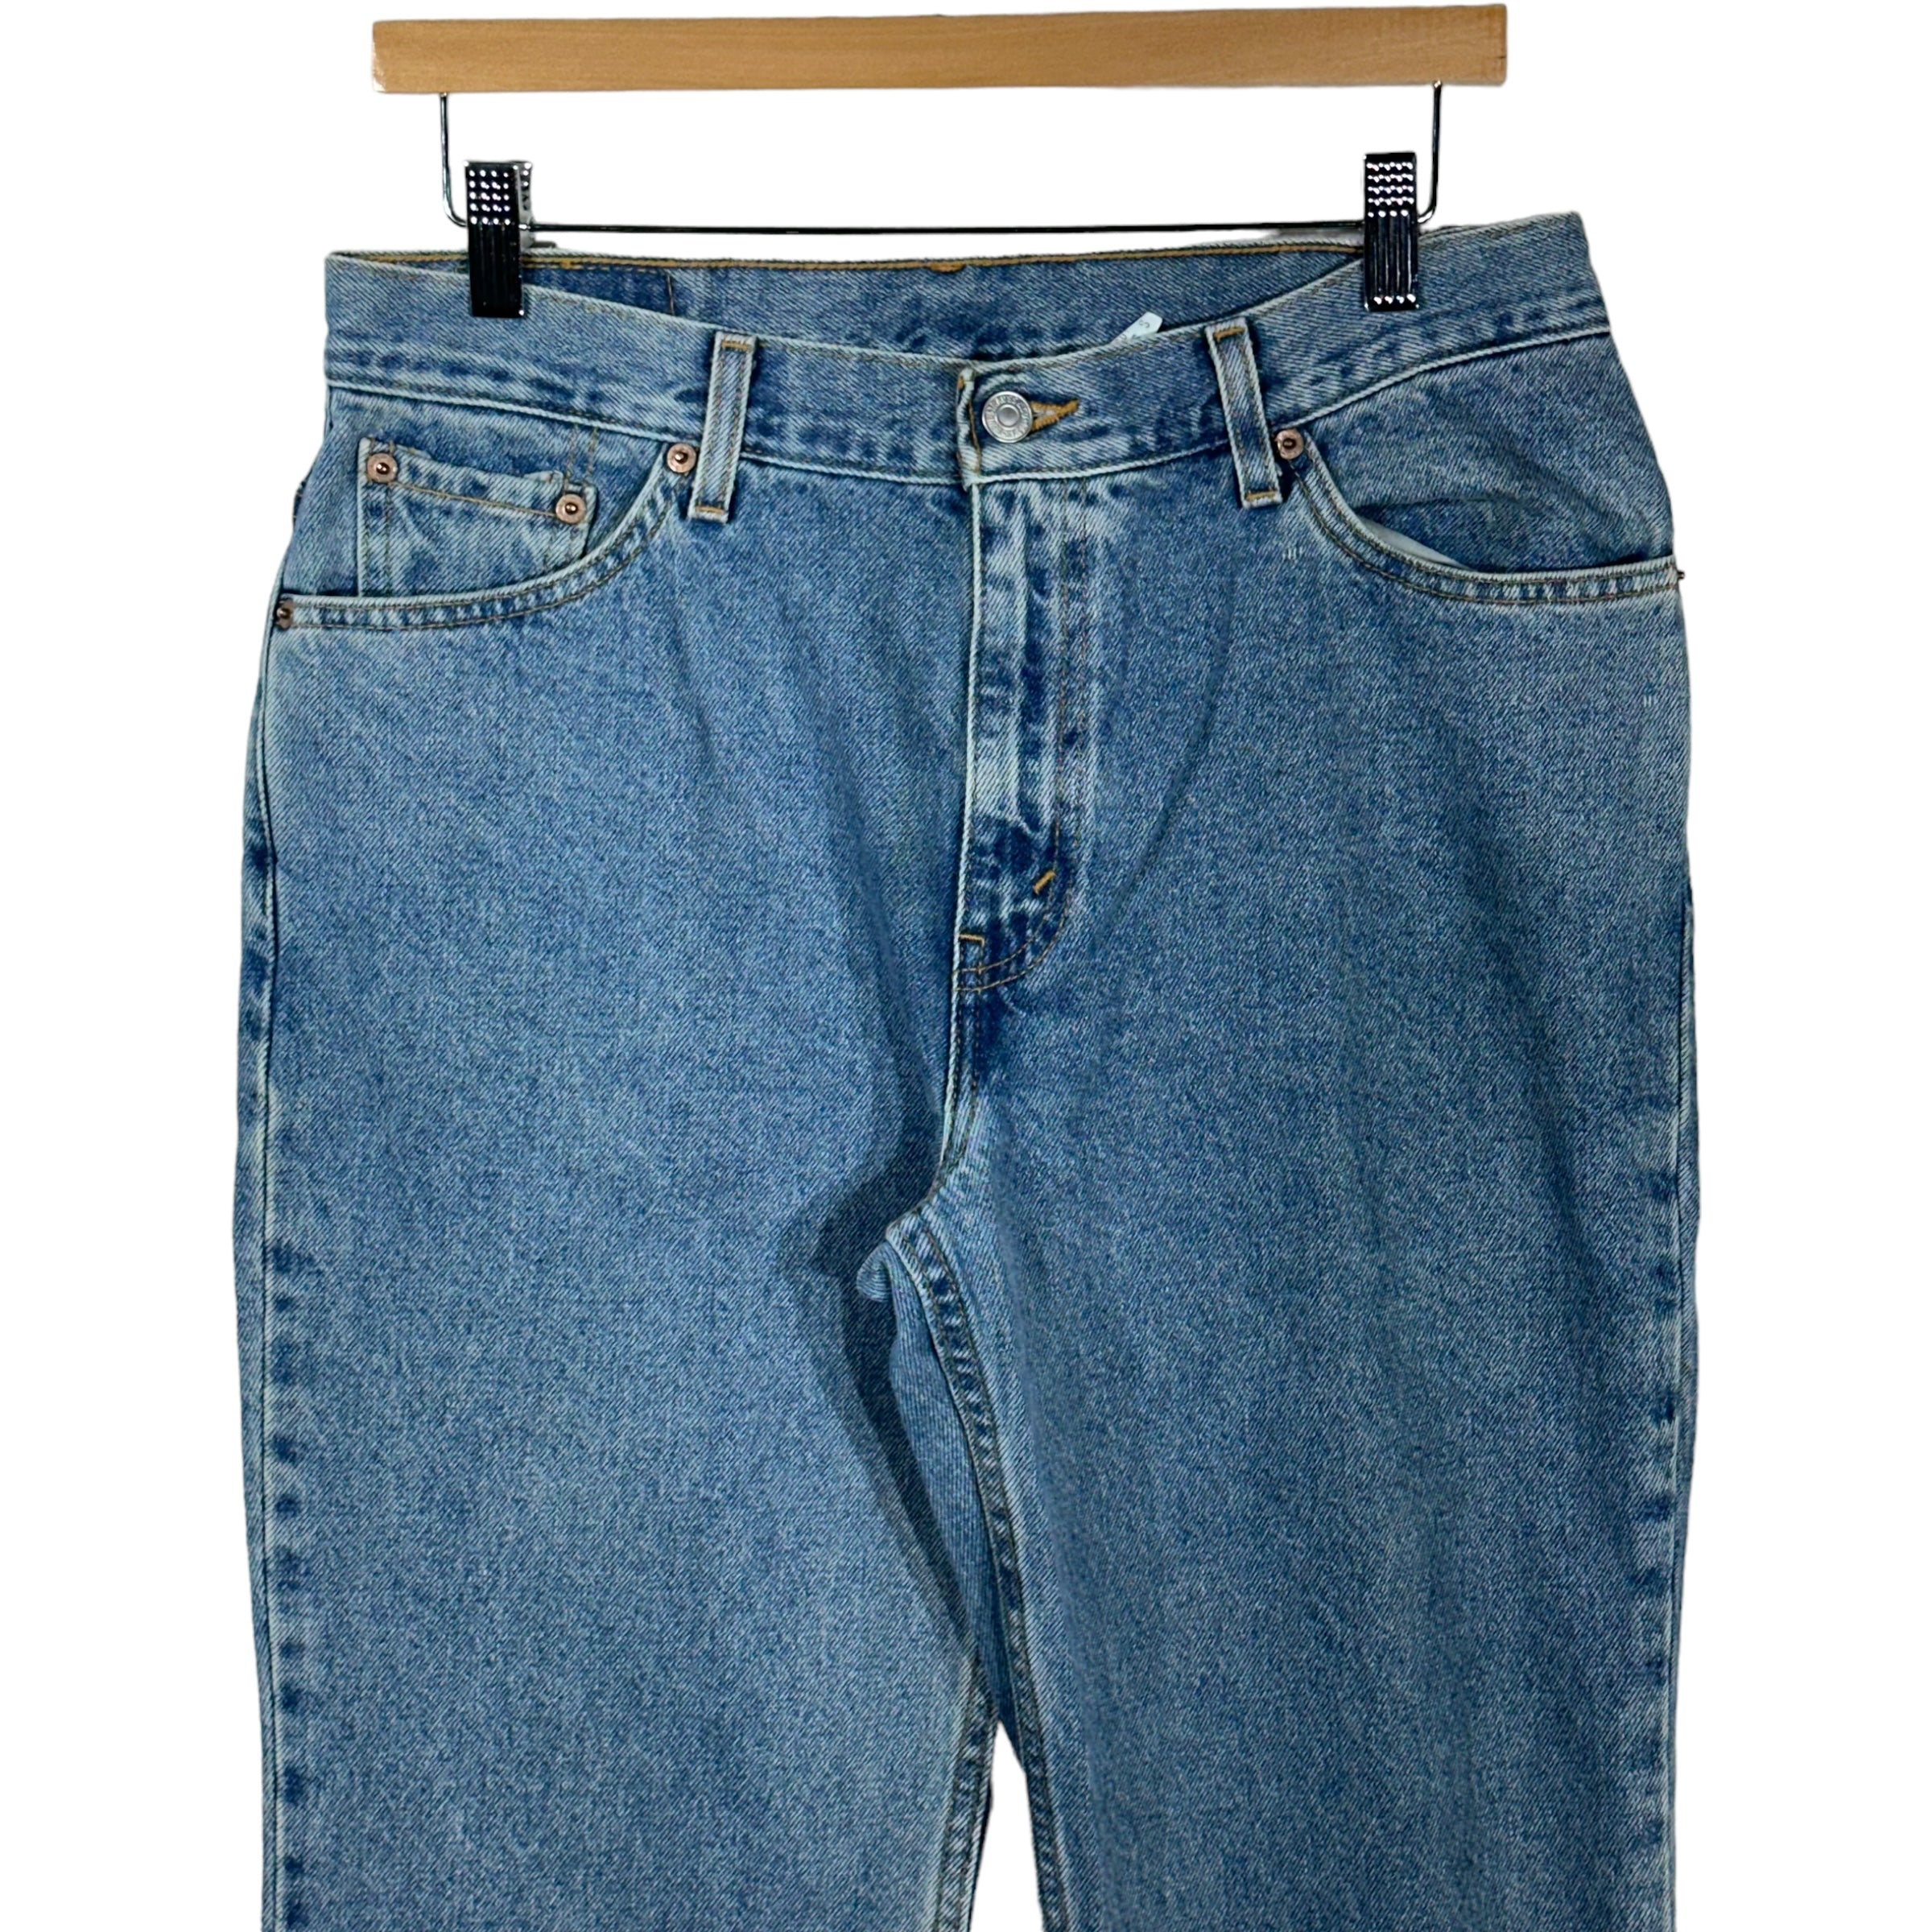 Vintage Levis 517 Denim Pants